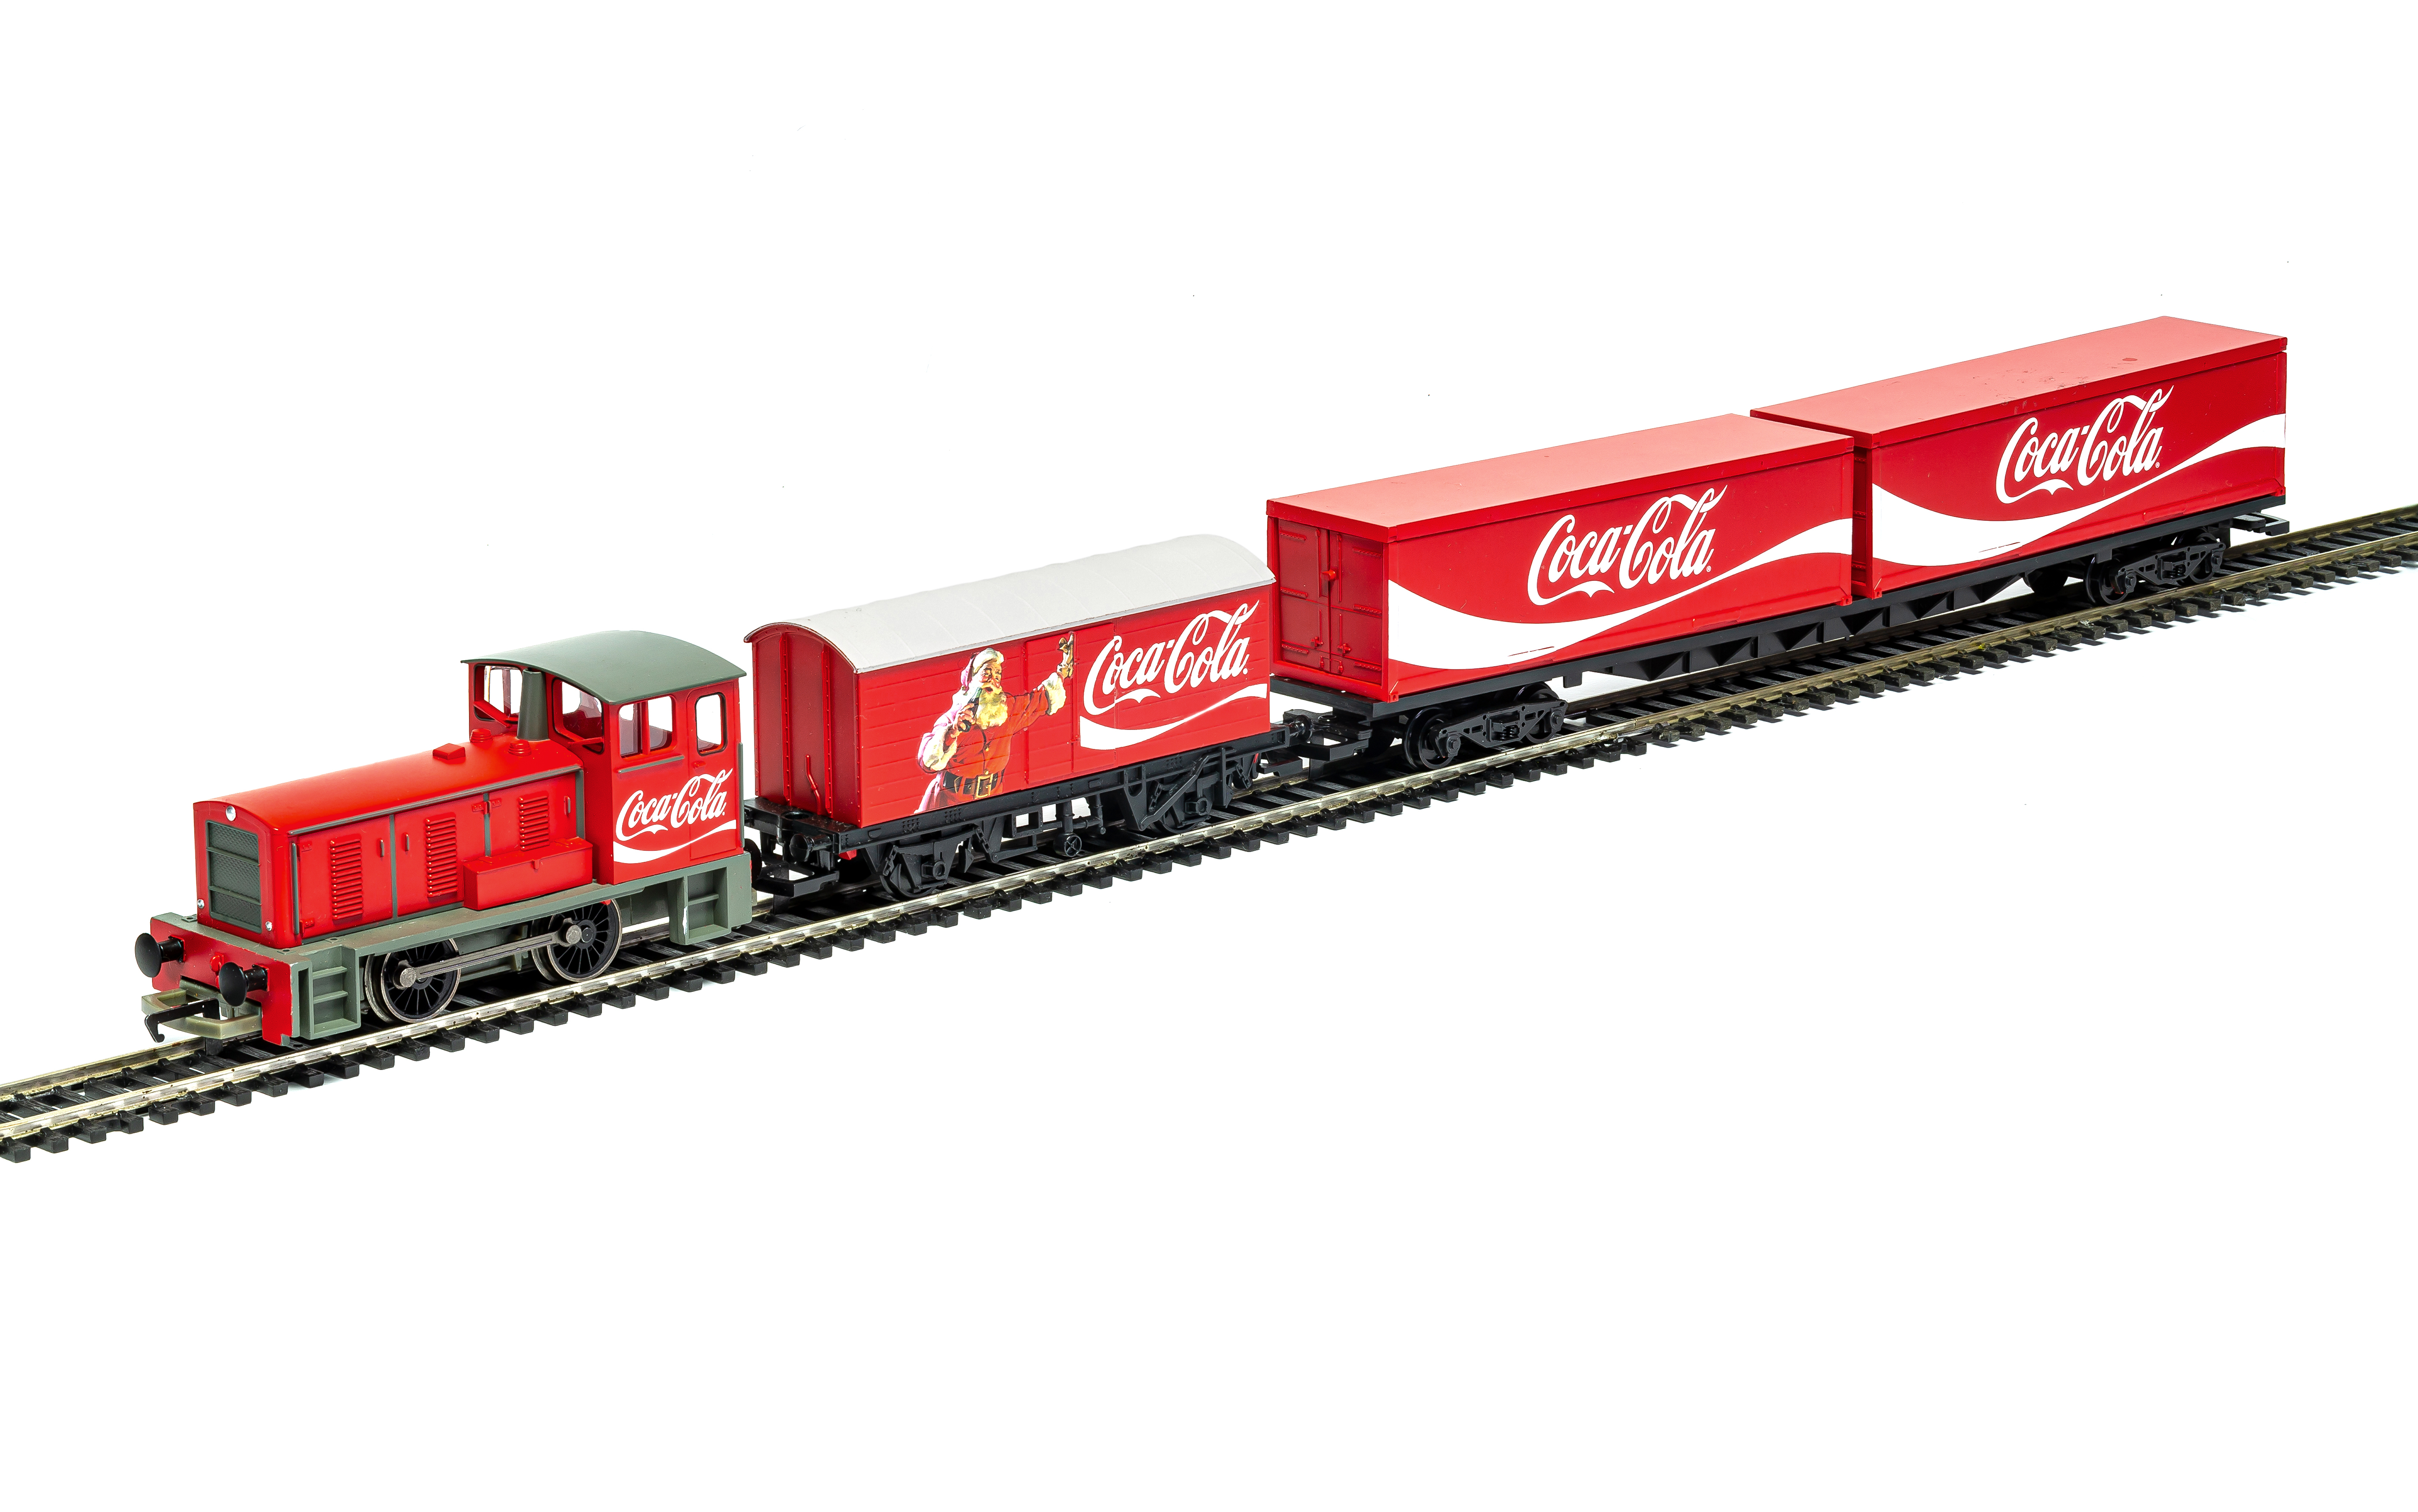 Coca-Cola - Papier cadeau de Luxe - Papier cadeau - 5 rouleaux